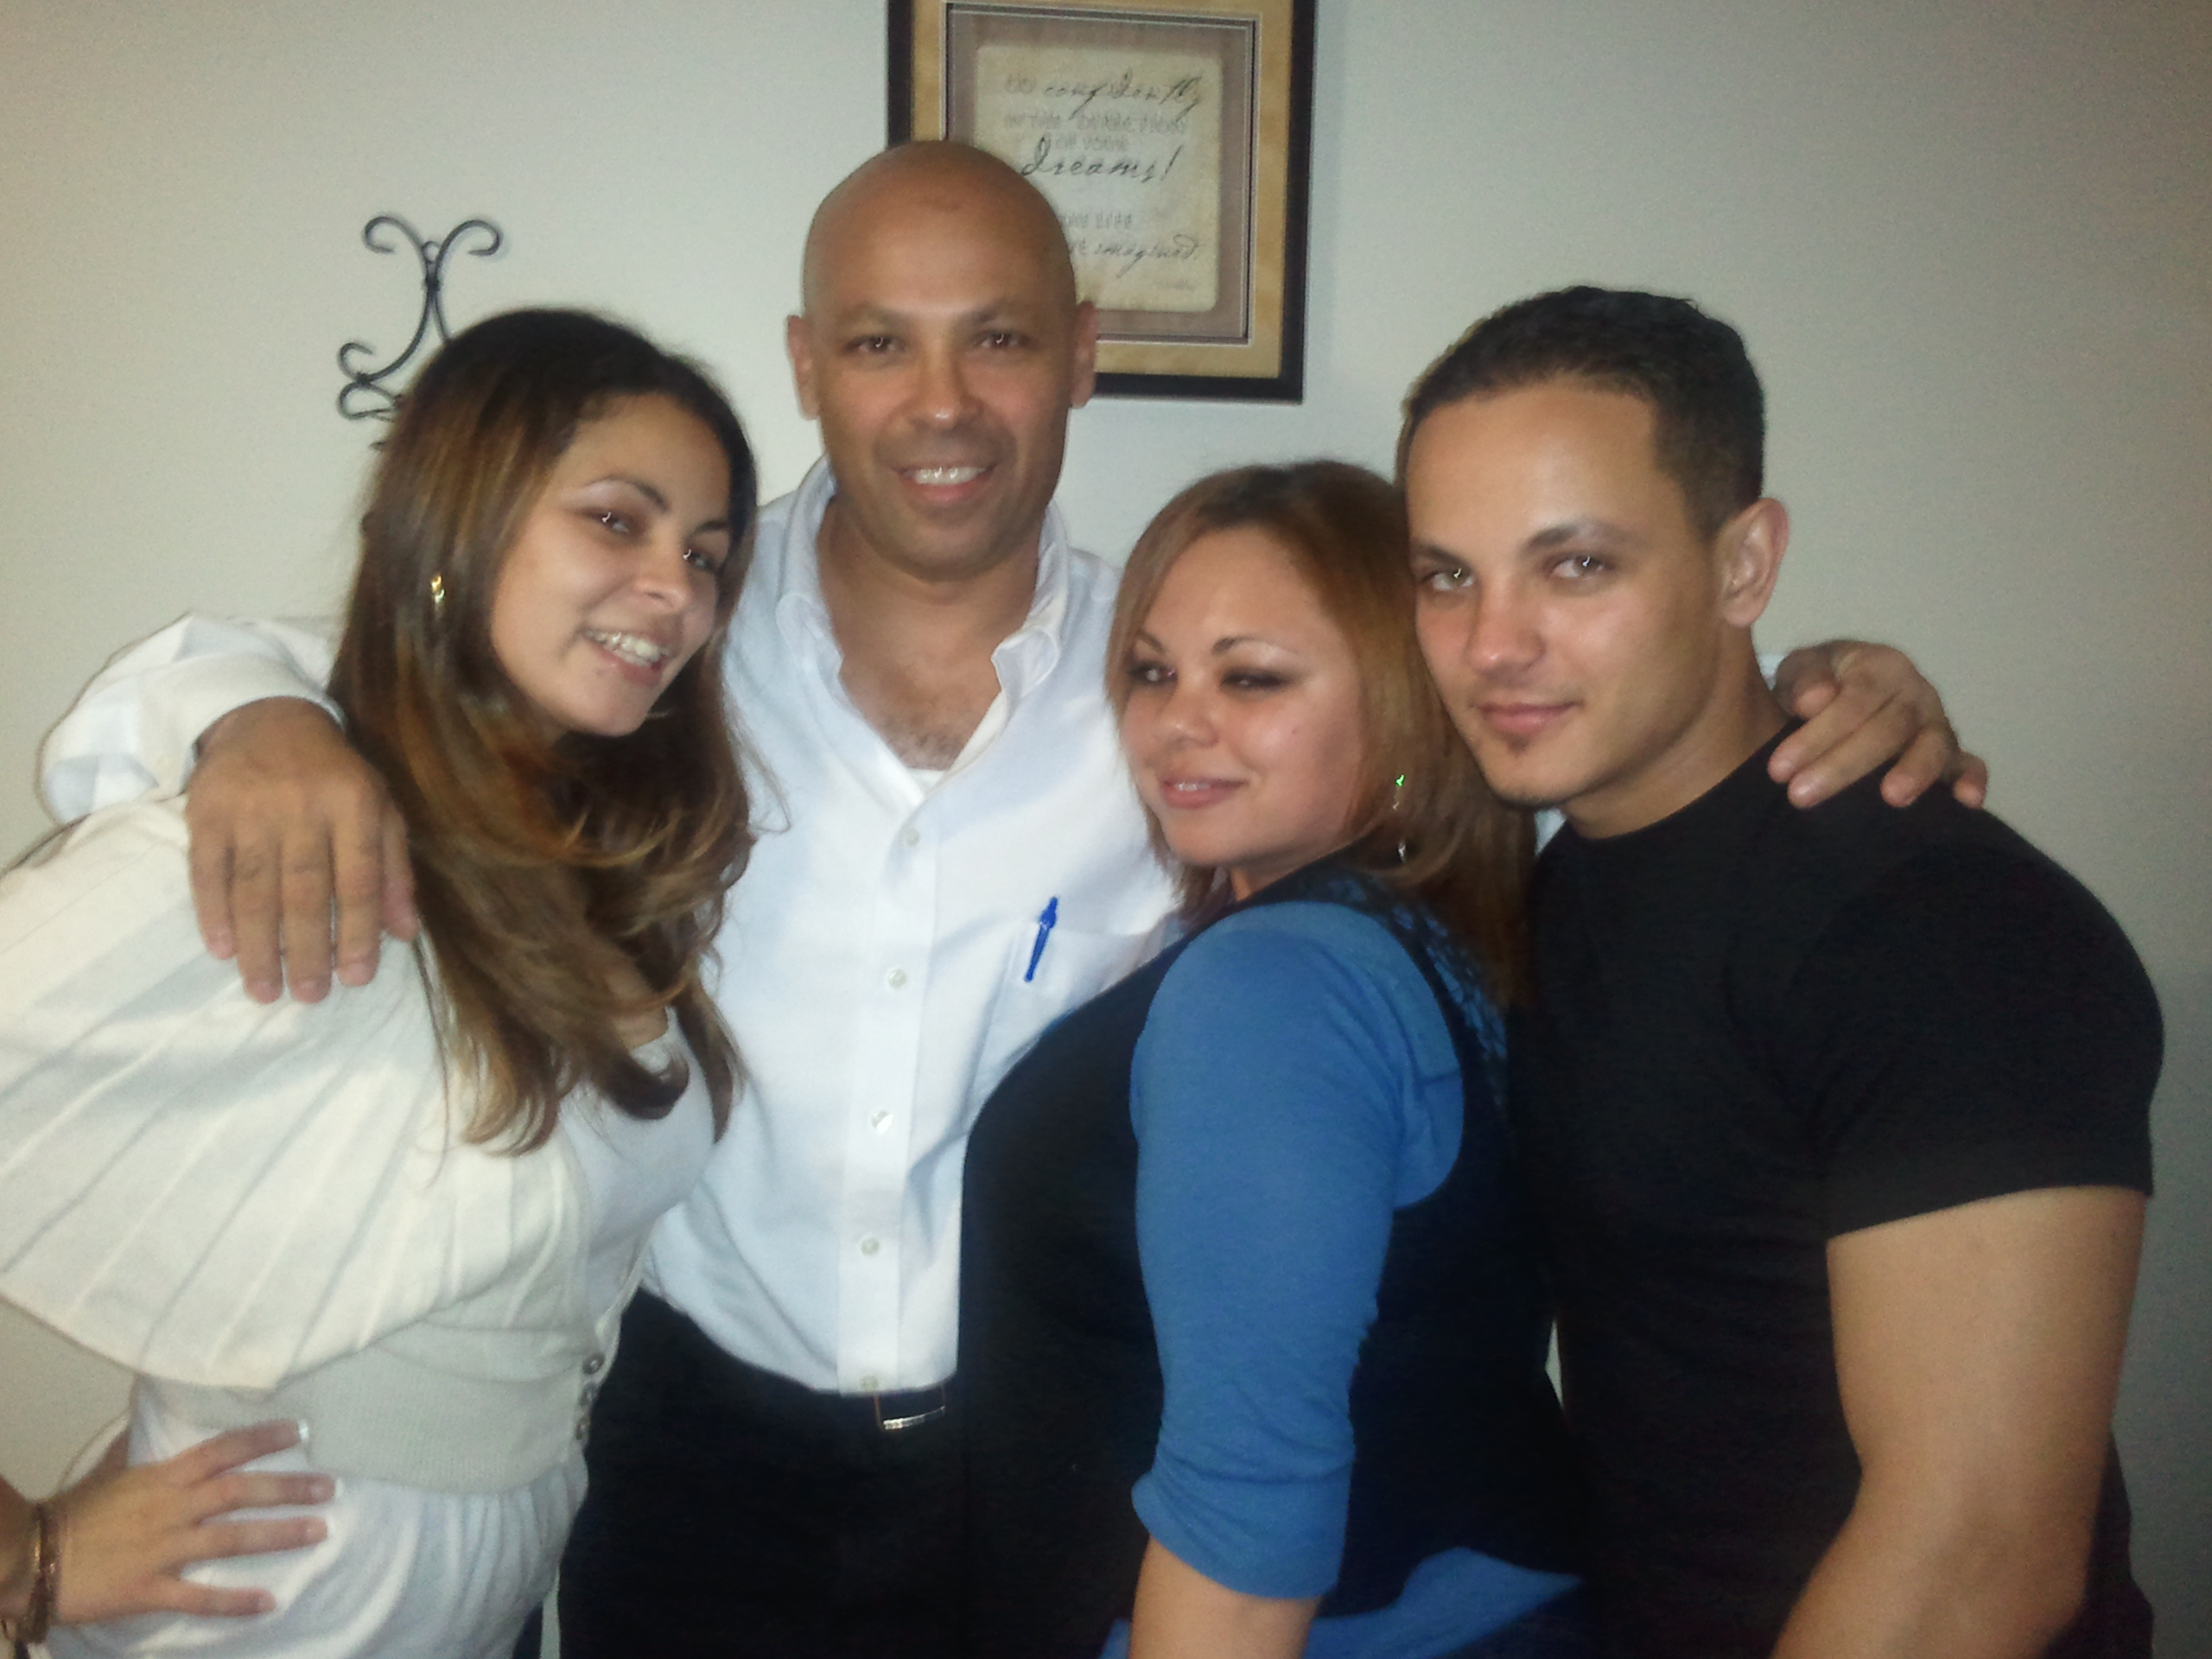 Raul with his children, Yelitza, Brenda, and Isaiah